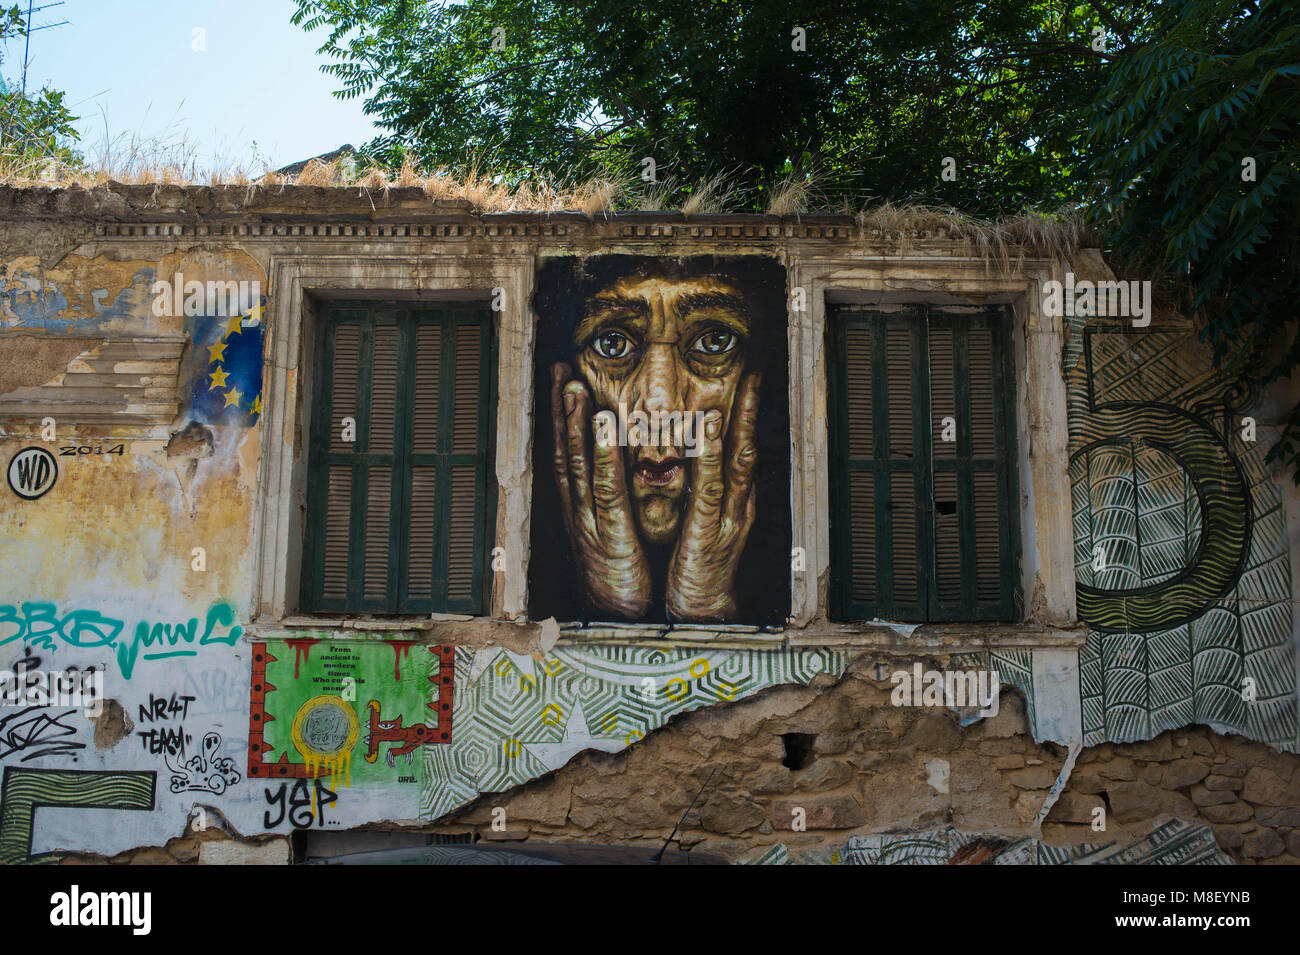 Athens. Street art, Exarchia. Greece Stock Photo - Alamy